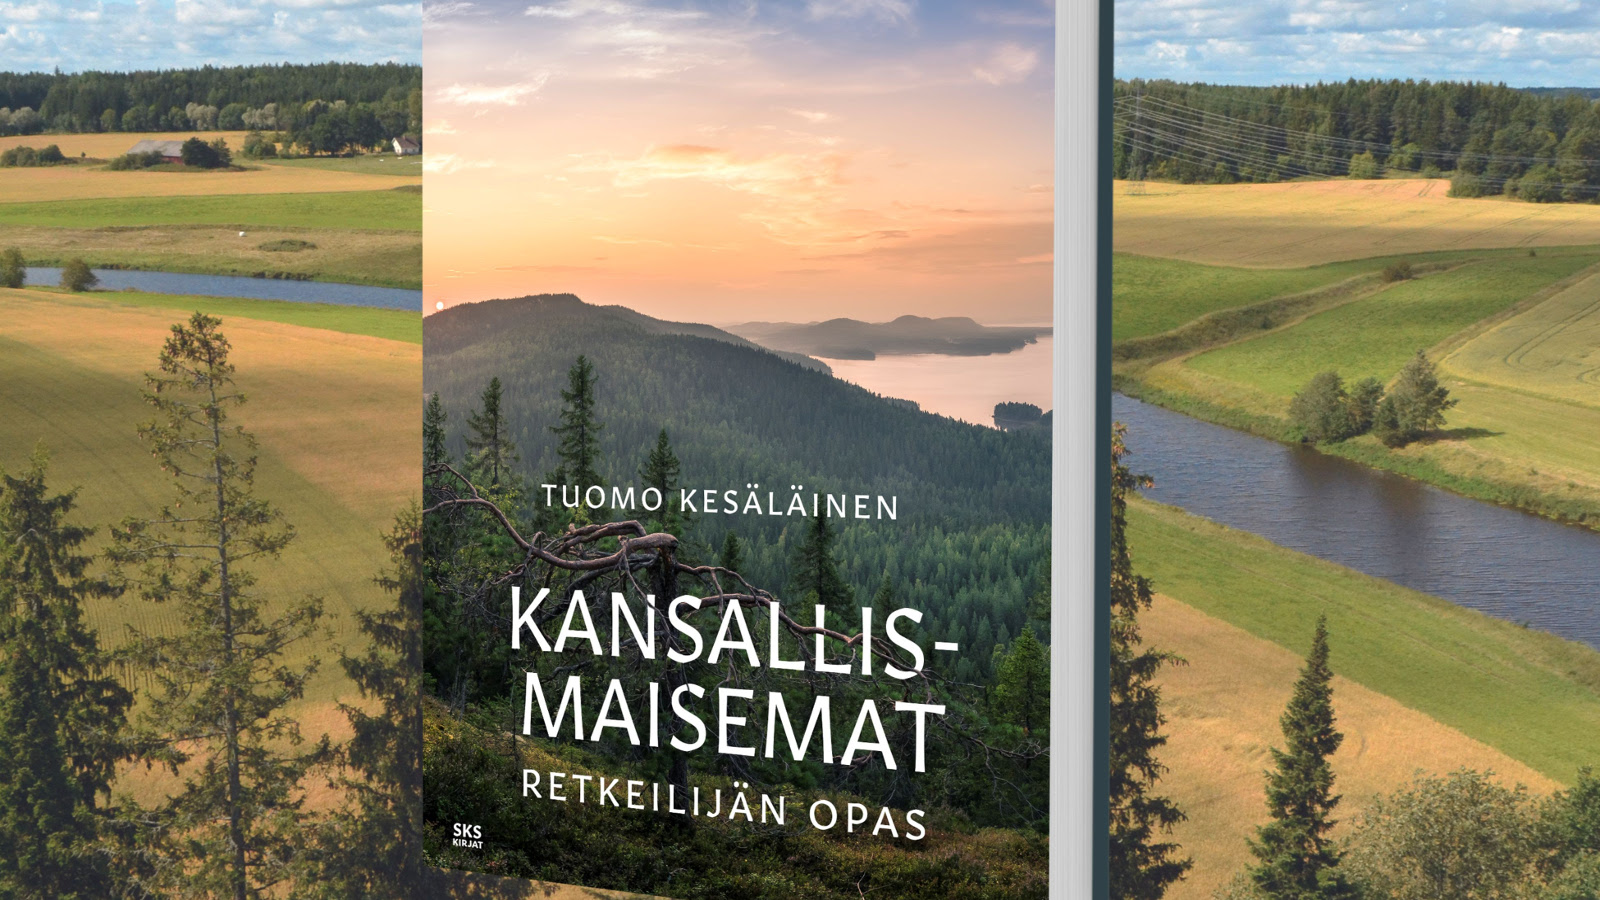 Kuvassa on kirjan kansi taustanaan peltomaisemaa, jonka keskellä virtaa joki. Takana on metsän reuna sini-valkosita poutapilveä.  Kirjan kannessa on sen nimi Kansallismaisemat - retkeilijän opas ja näiden yläpuolella kirjoittajan nimi Tuomo Kesäläinen.